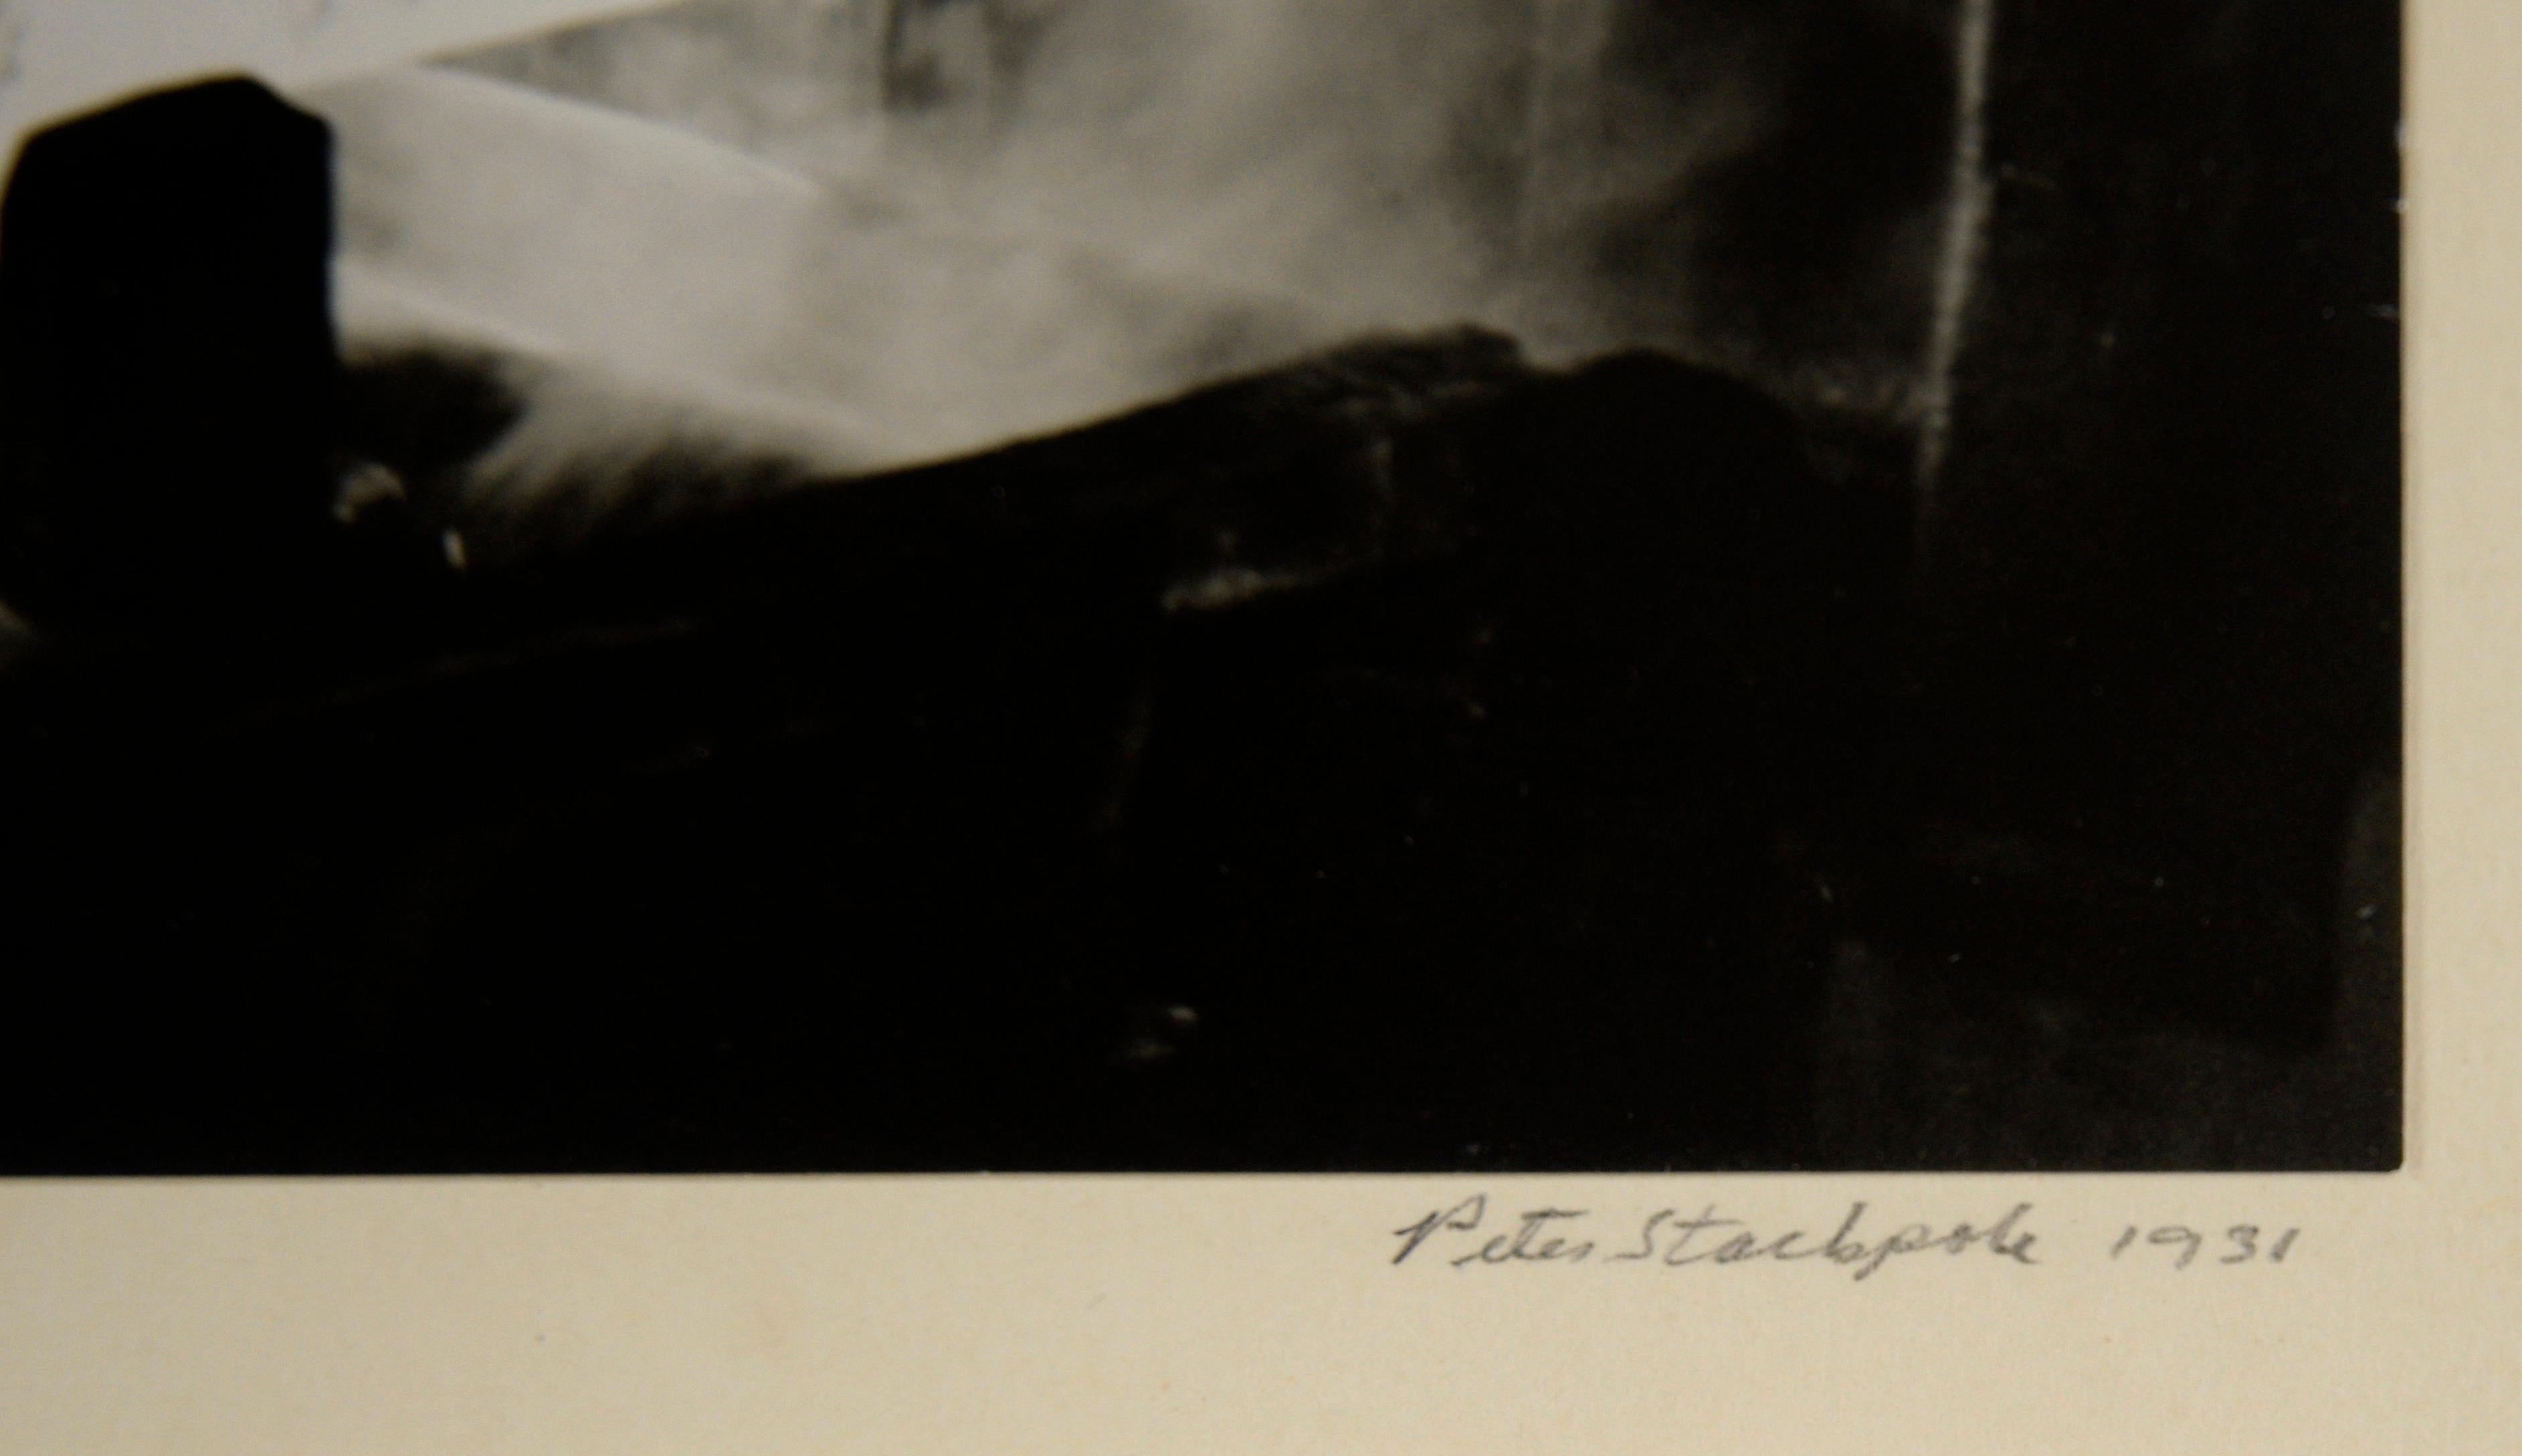 Kontrastreiches Foto von Peter Stackpole (Amerikaner, 1913-1997). Das Foto zeigt eine heiße Metallstange auf einer großen Maschine, die gerade bearbeitet wird. Das Metall glüht weißglühend und bildet einen starken Kontrast zum Rest der Fabrik und